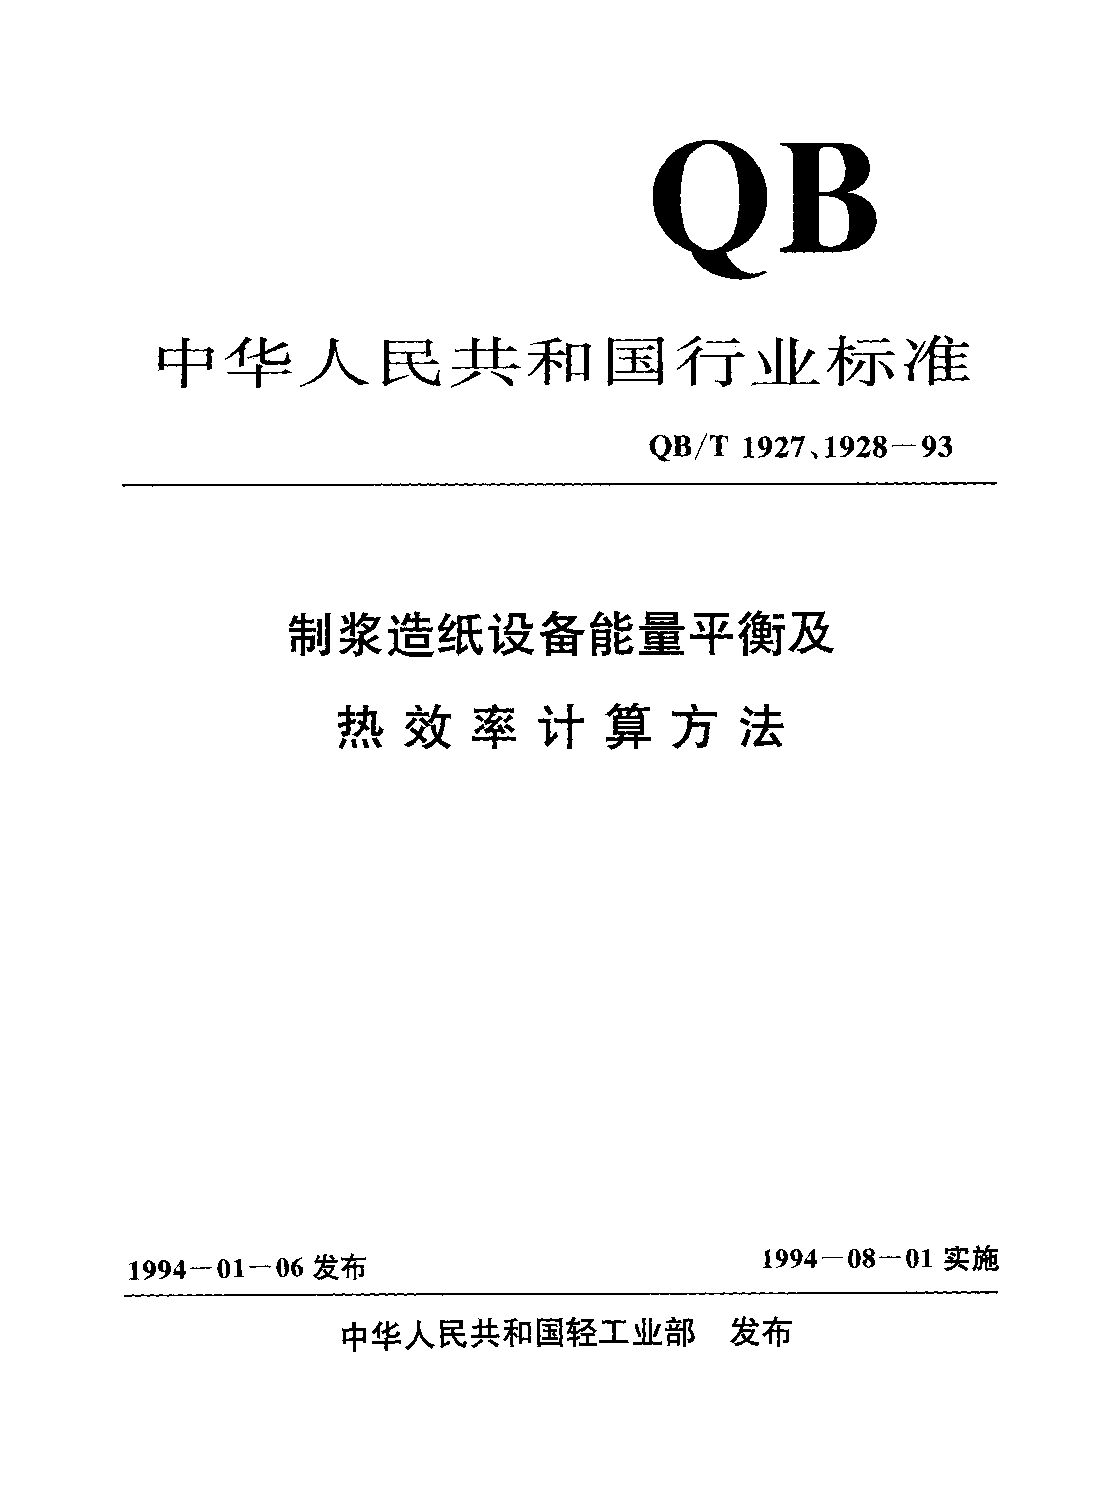 QB/T 1928-1993